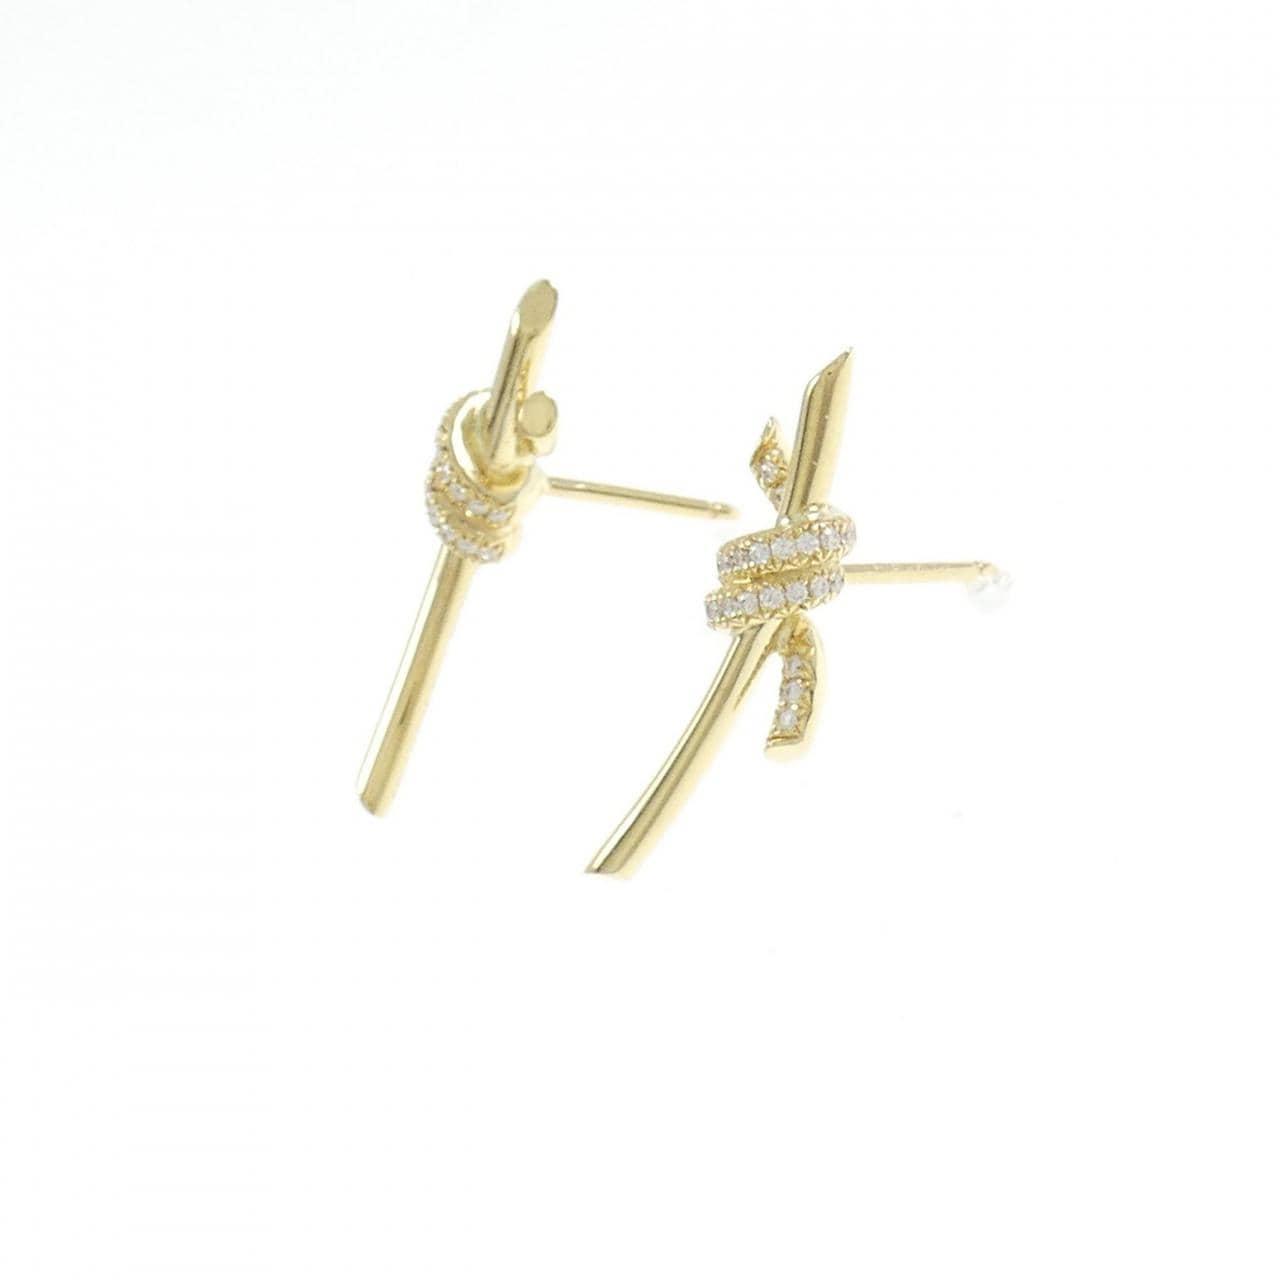 TIFFANY knot earrings